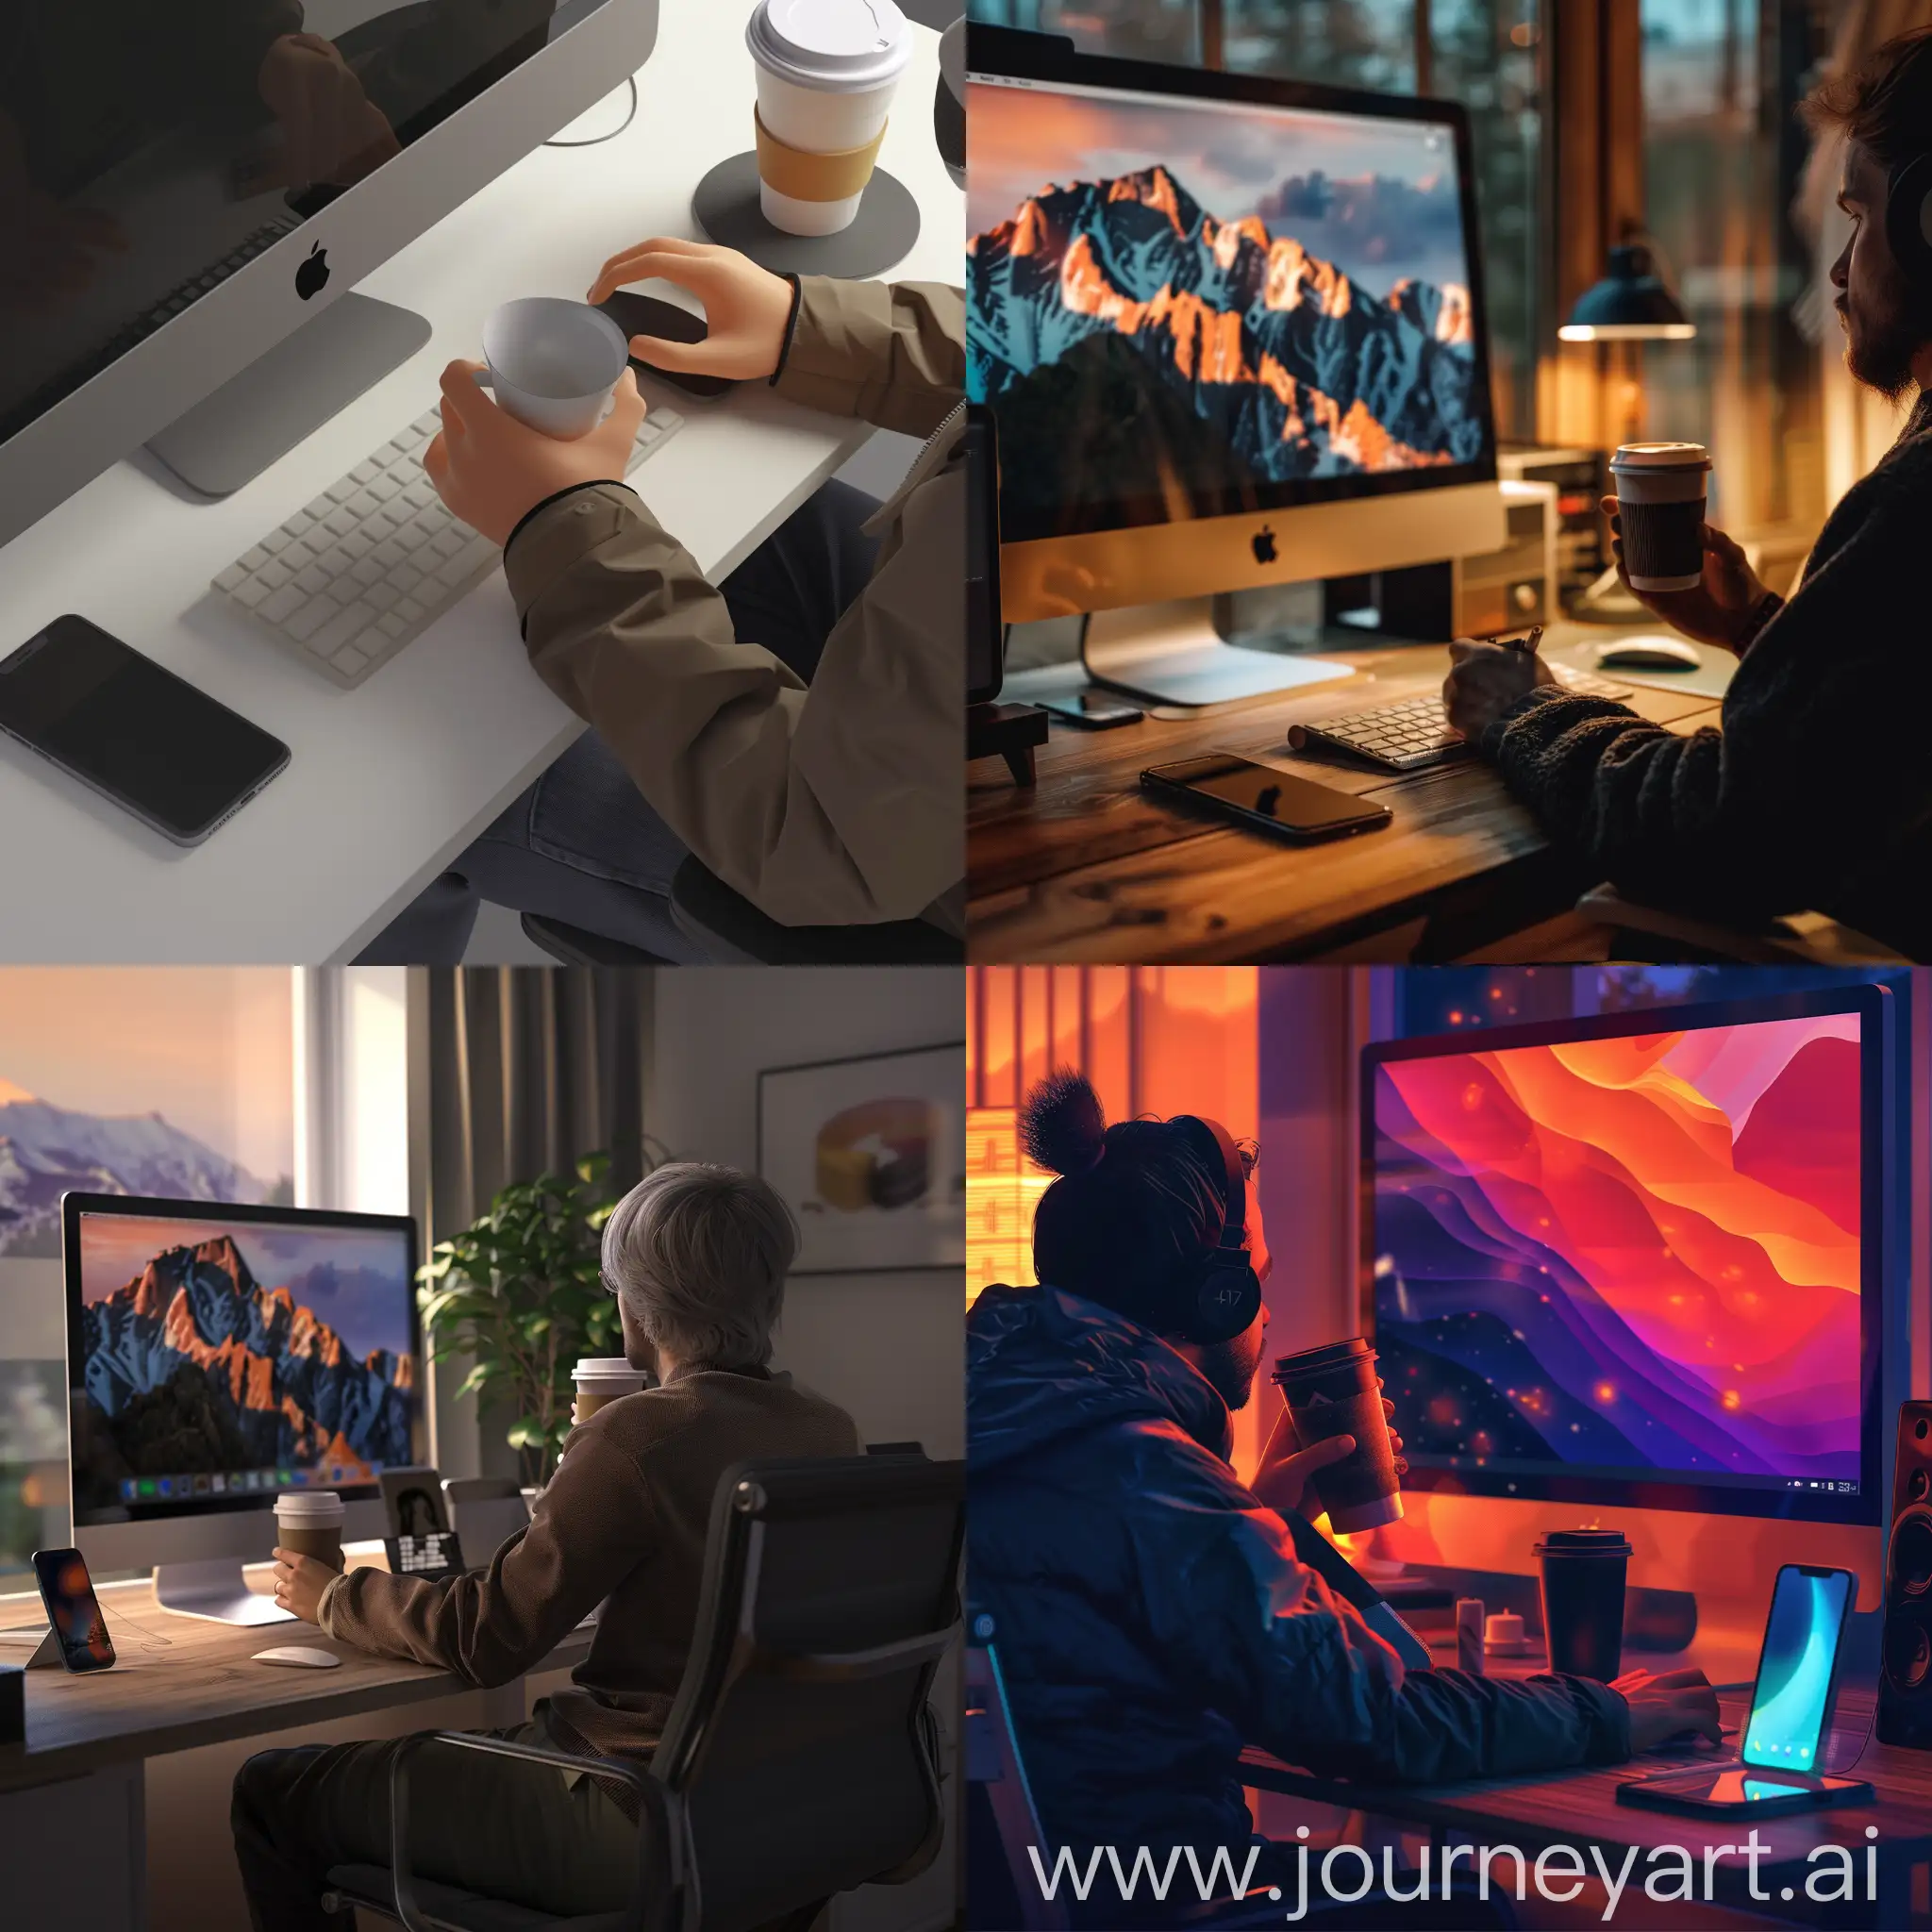 criar uma imagem 4k realista de uma pessoa sentada a frente ao computador trabalhando e tomando um cafe com um iphone ao lado